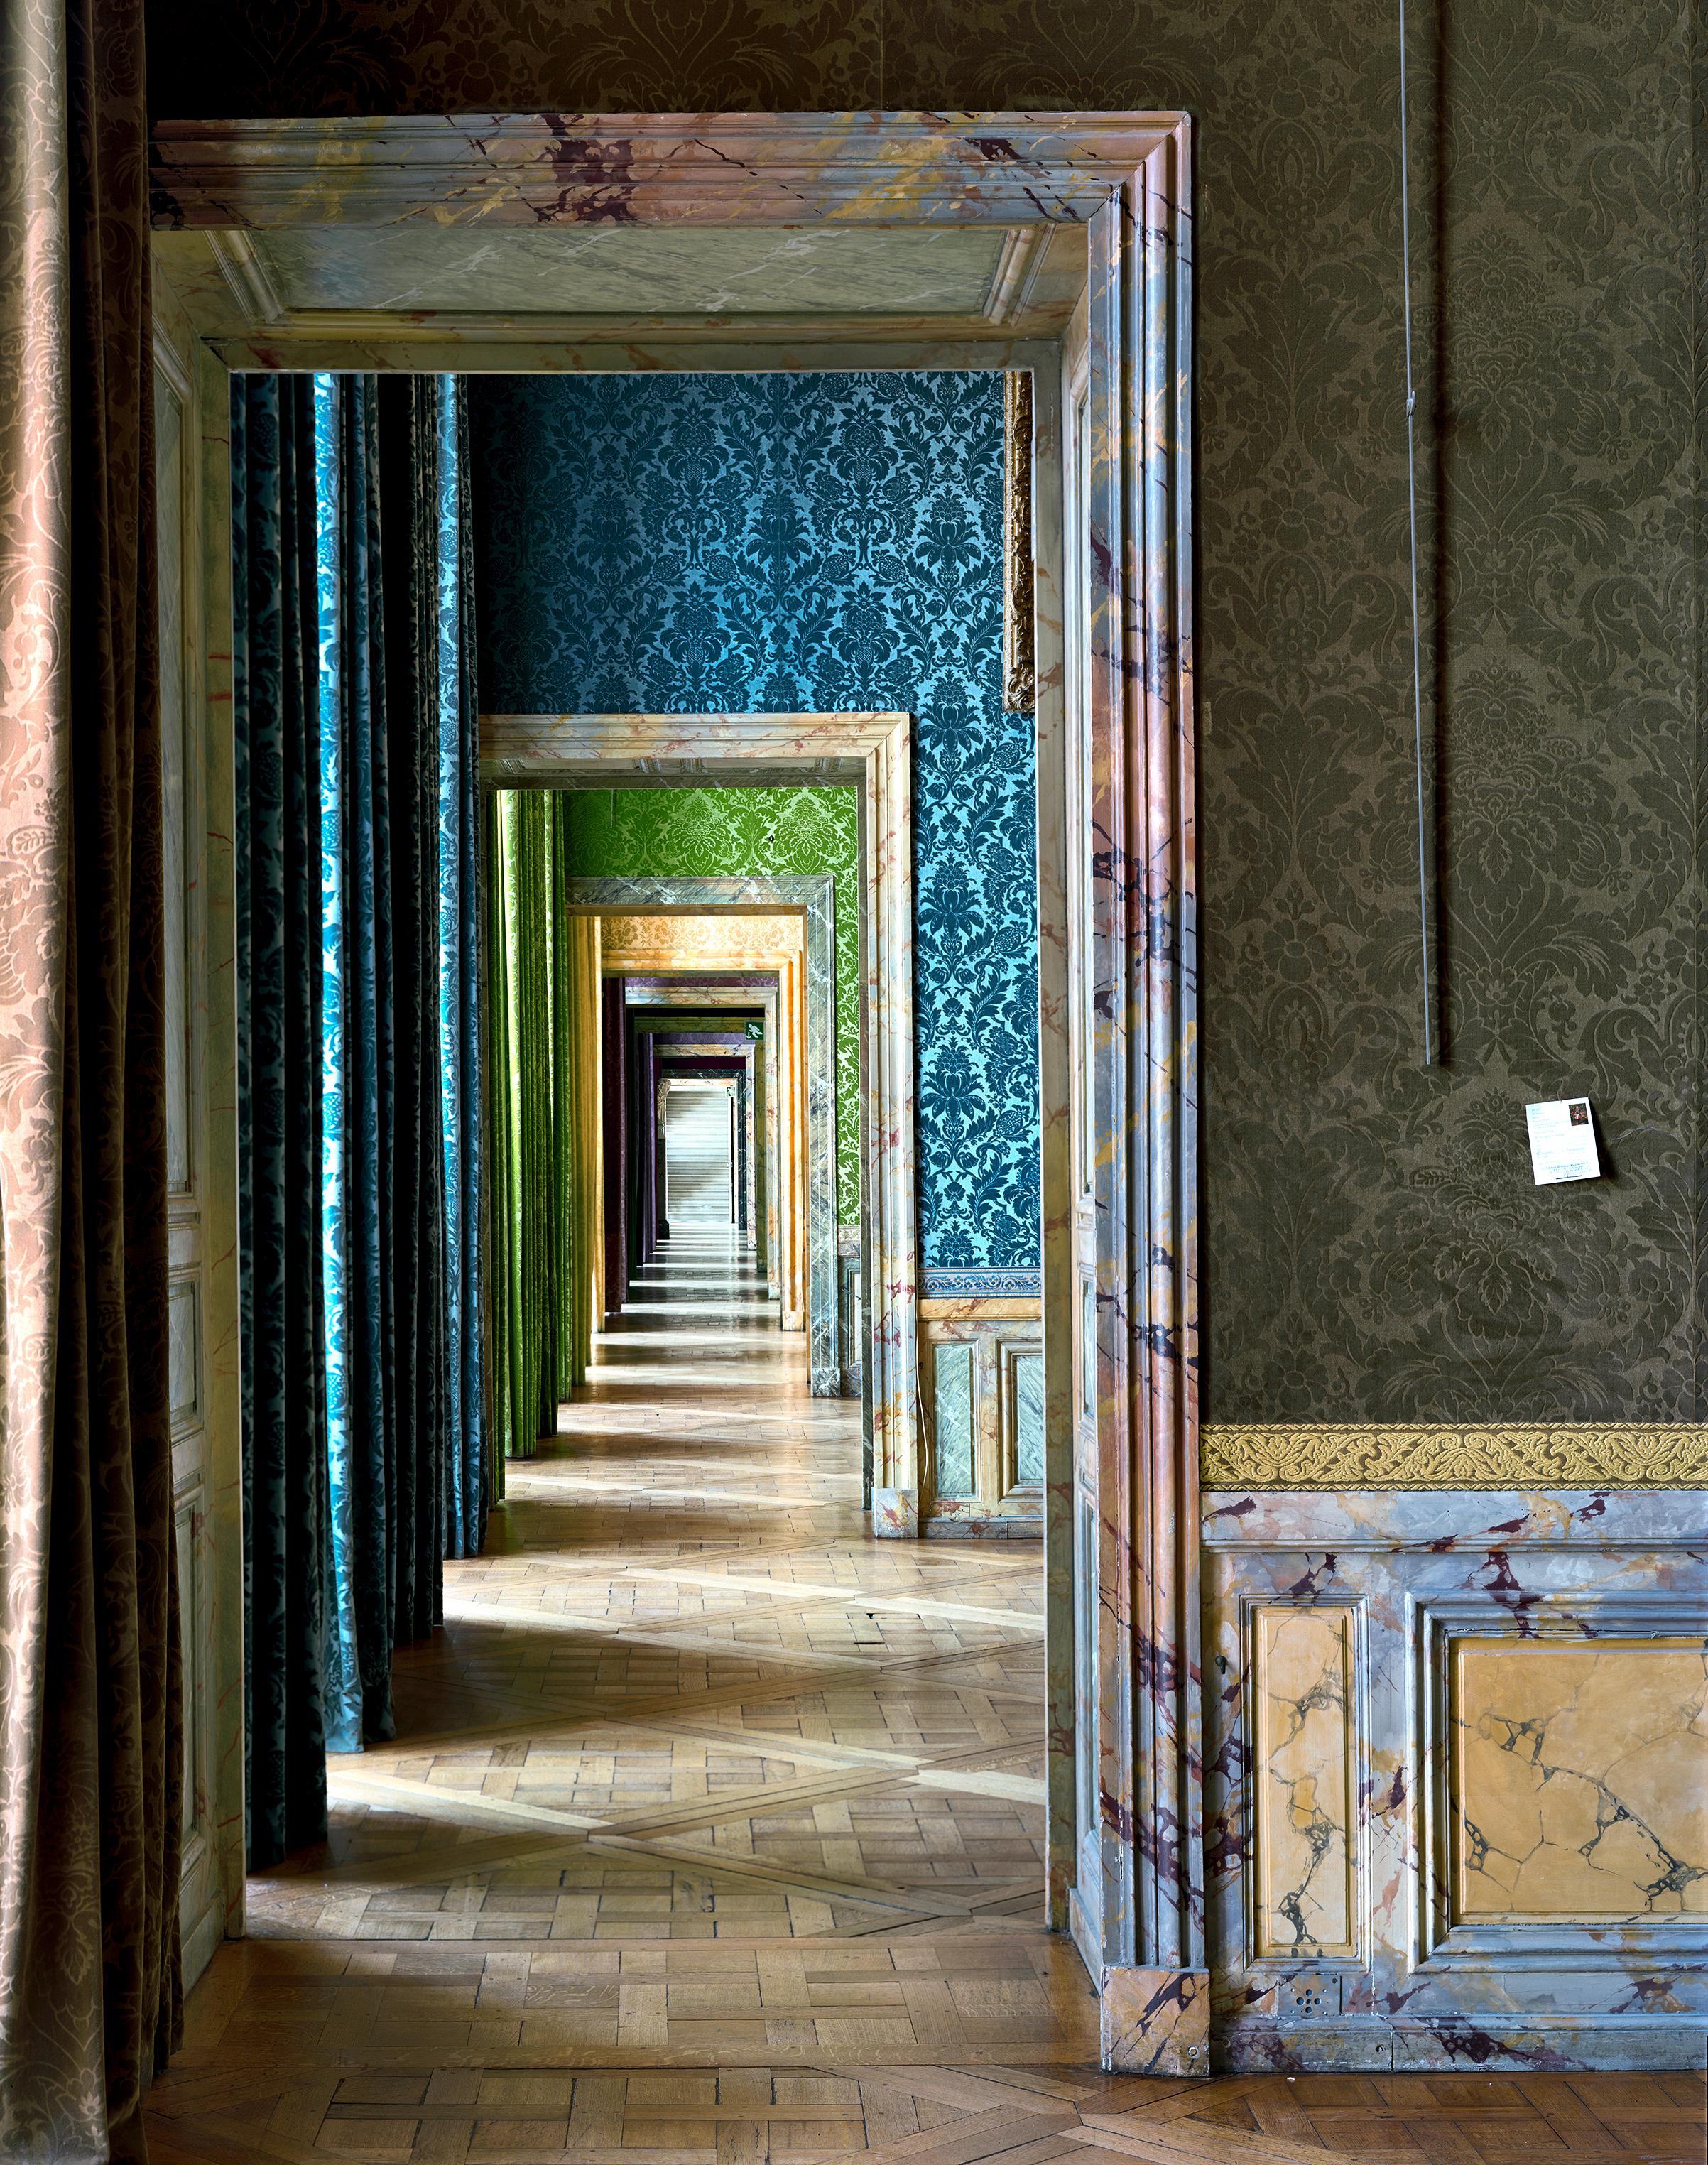 Salles du XVII, Aile du Nord- 1er étage, Château de Versailles,  France - Photograph by Robert Polidori